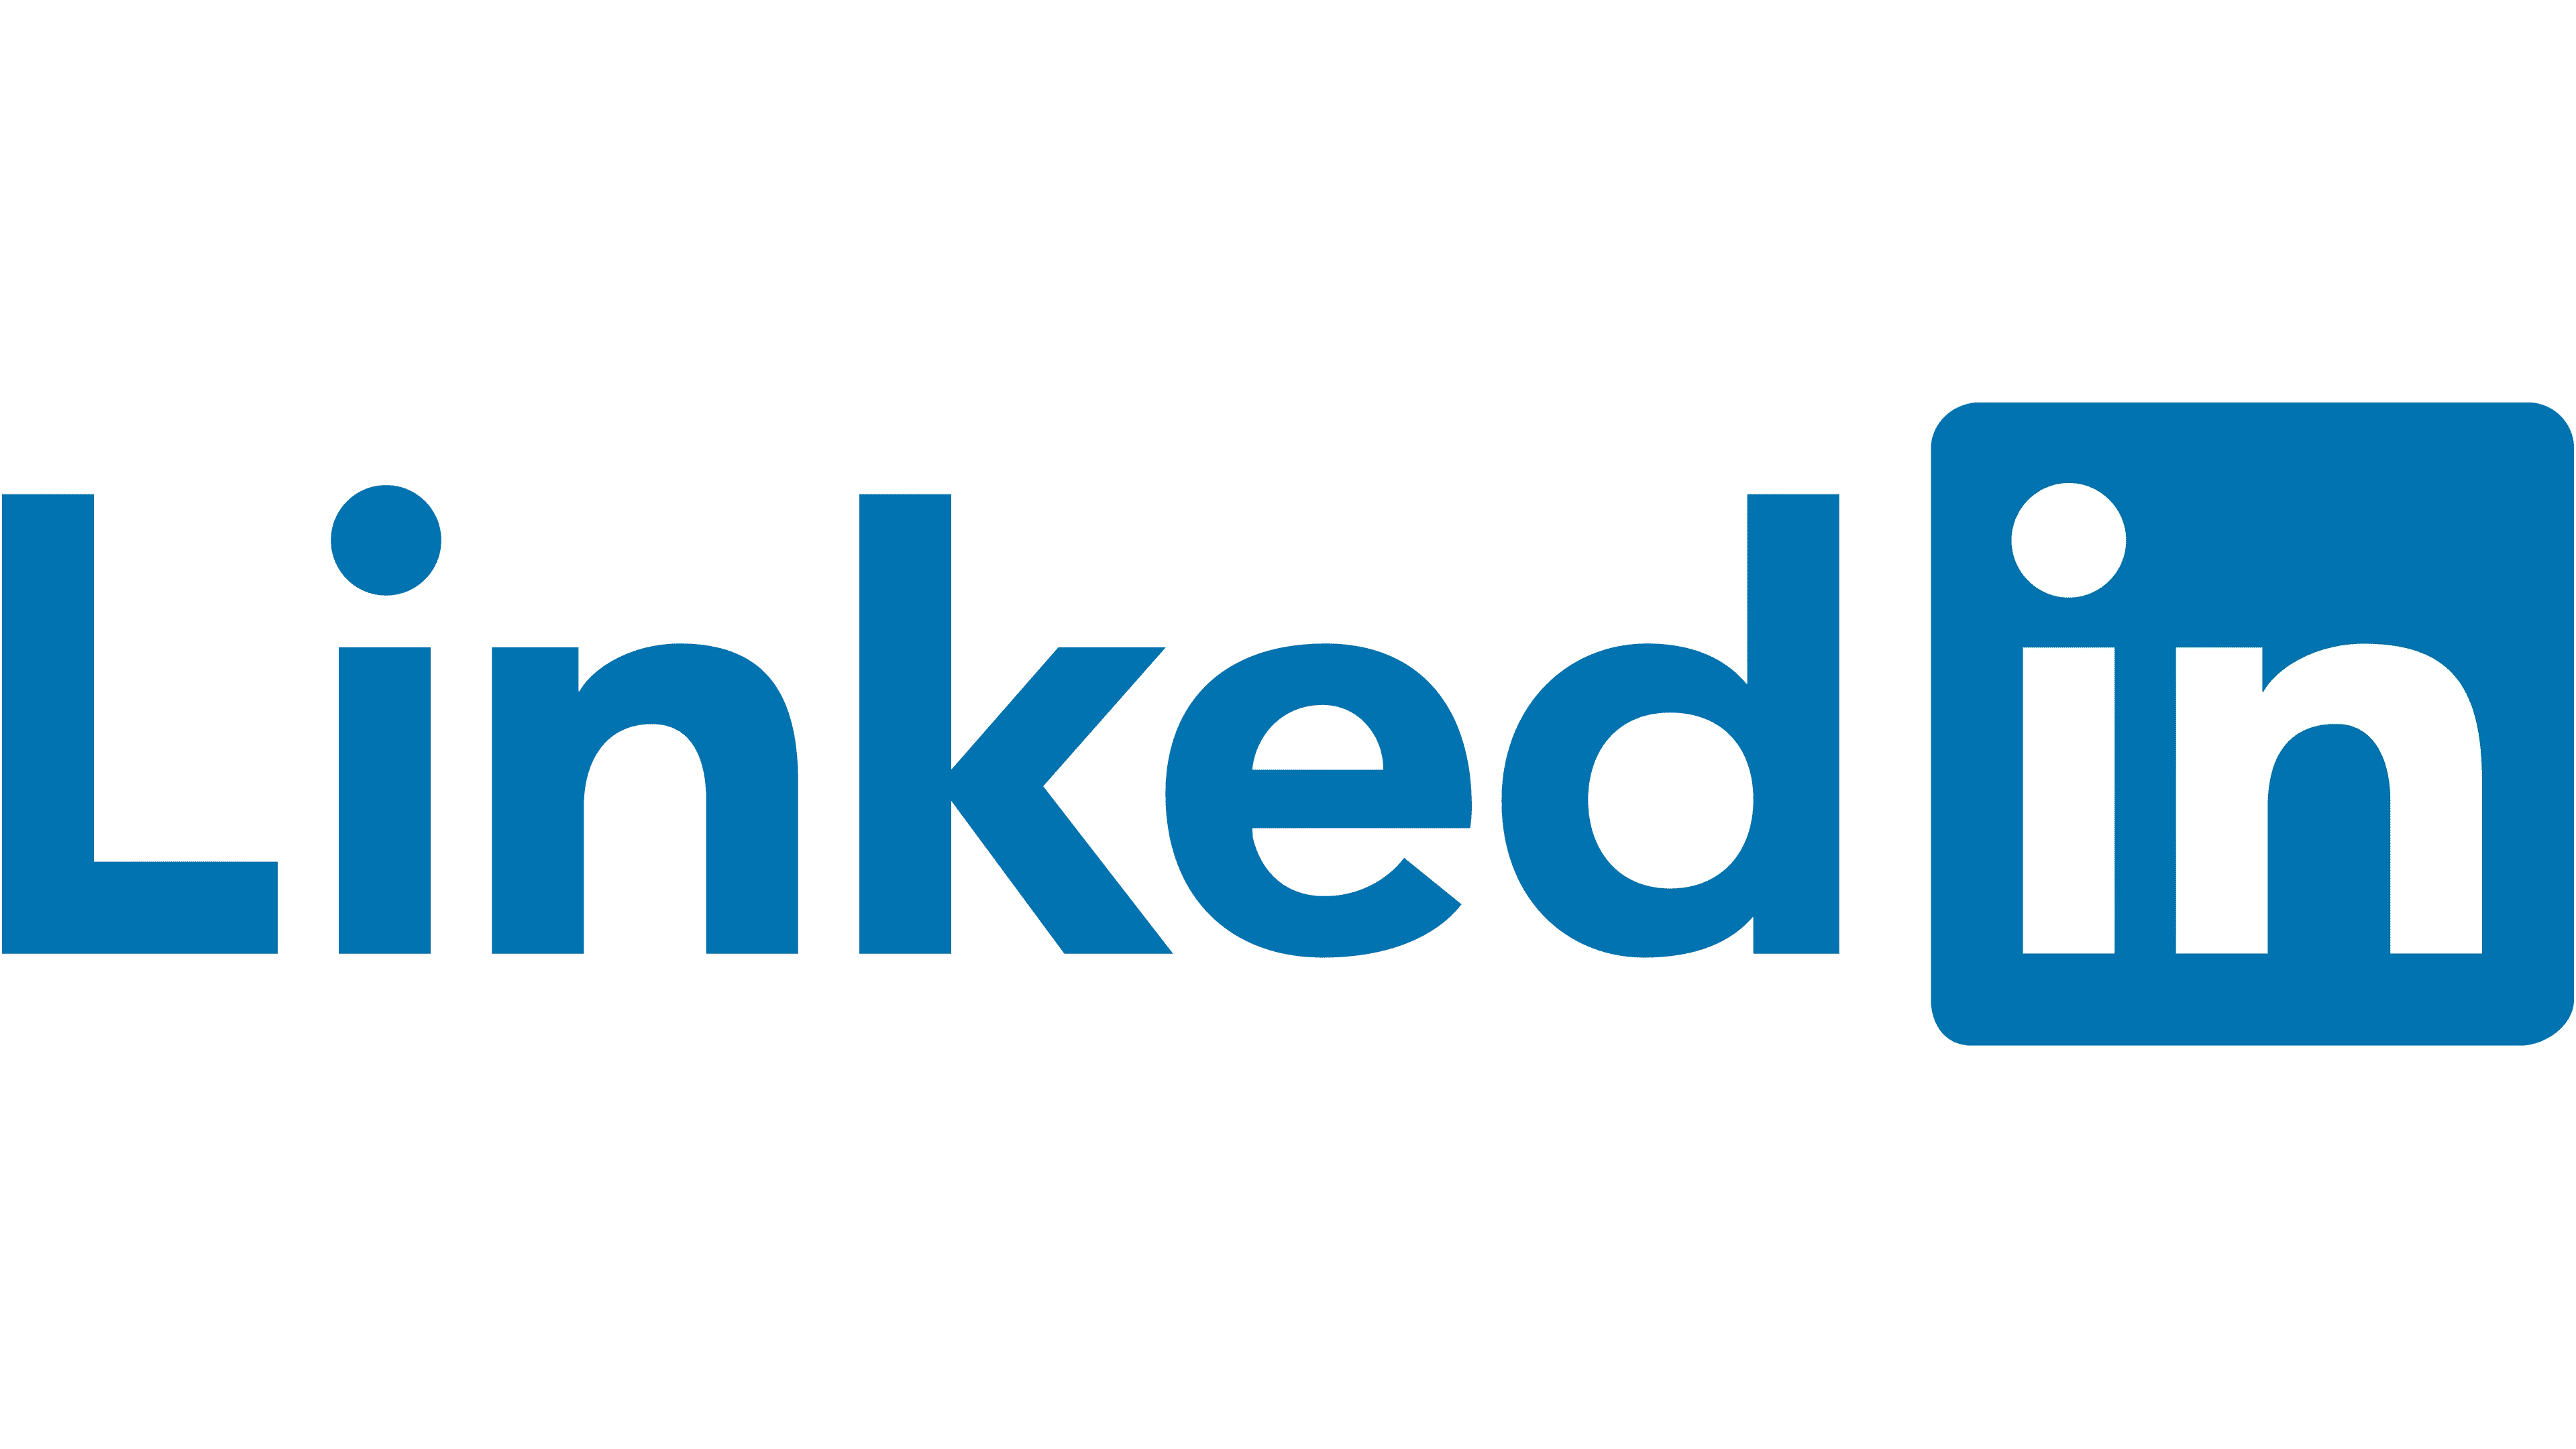 982-linkedin-logo-2019-17009244704989.png